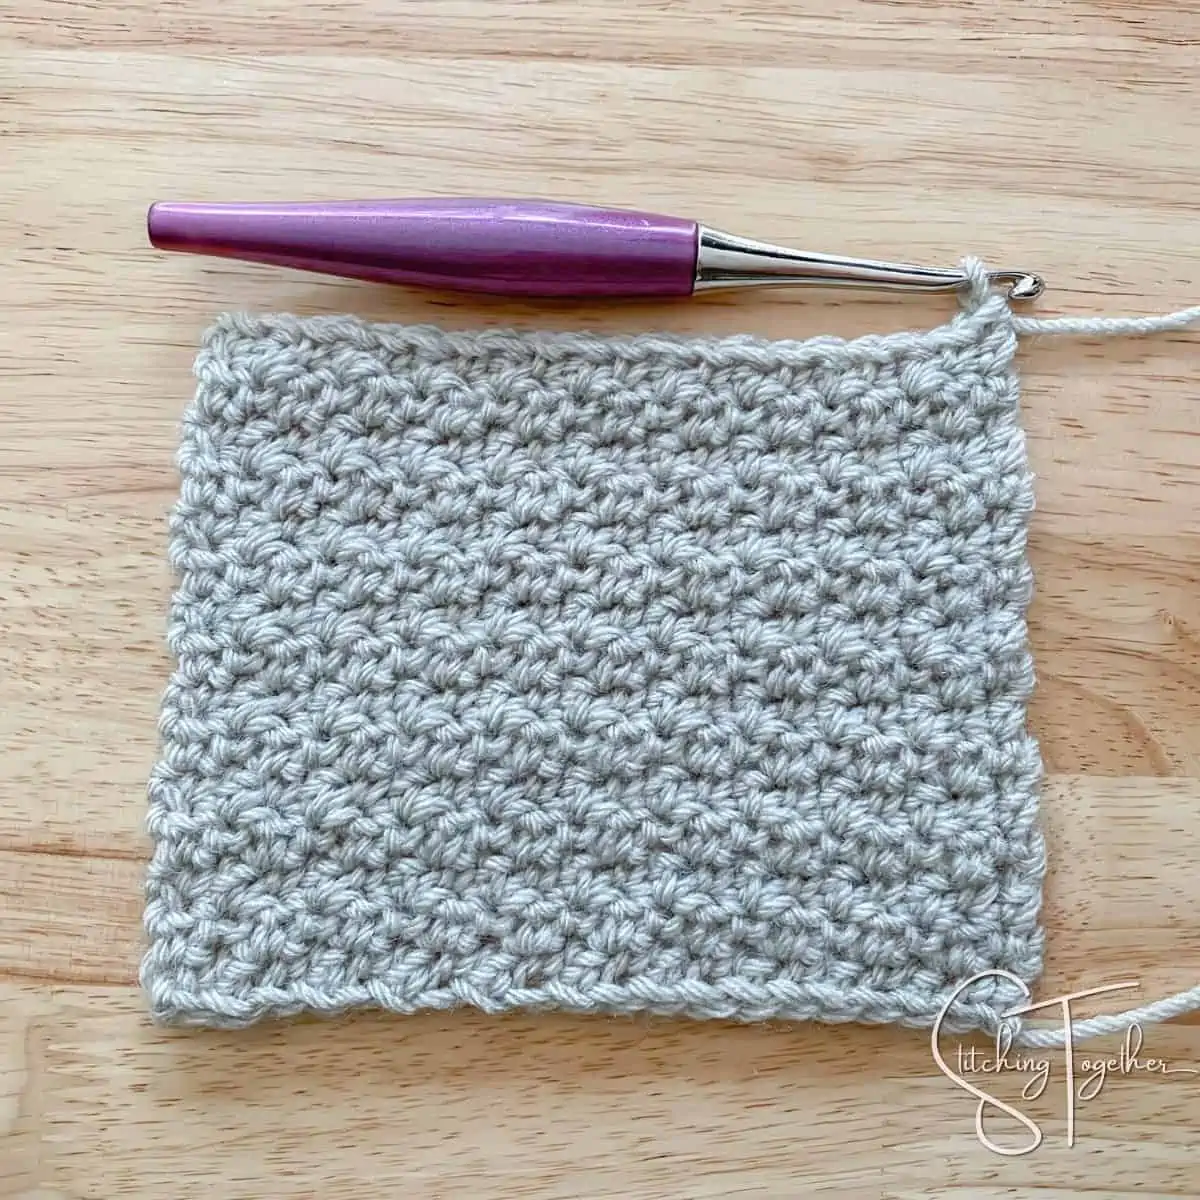 left handed lemon peel stitch crochet swatch with purple crochet hook